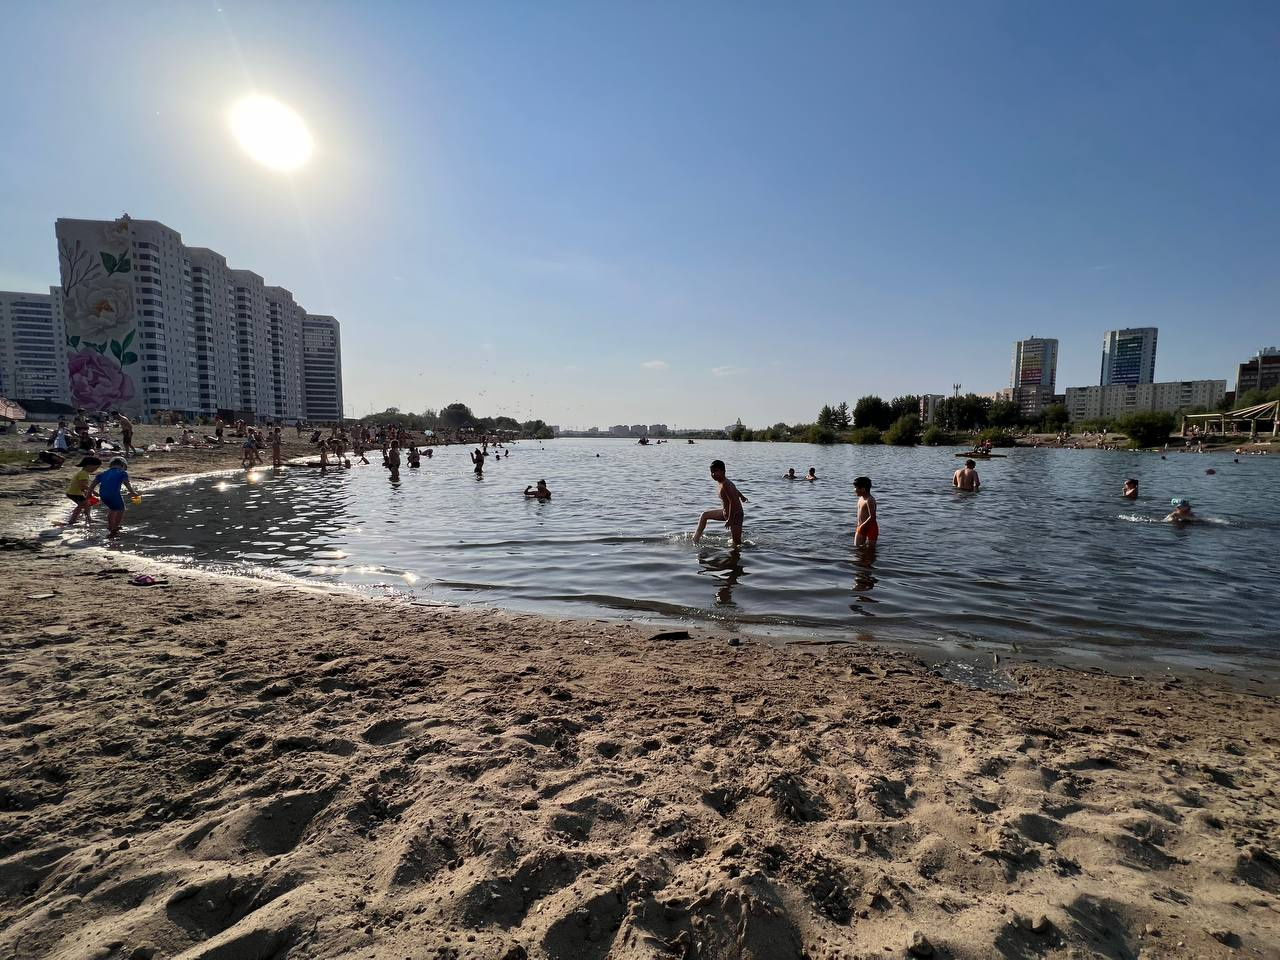 На Юго-Западном котловане — сотни отдыхающих. Этот пляж считается <a href="https://ngs.ru/text/summer/2022/08/21/71571476/" target="_blank" class="_">самым опасным</a> в Новосибирске